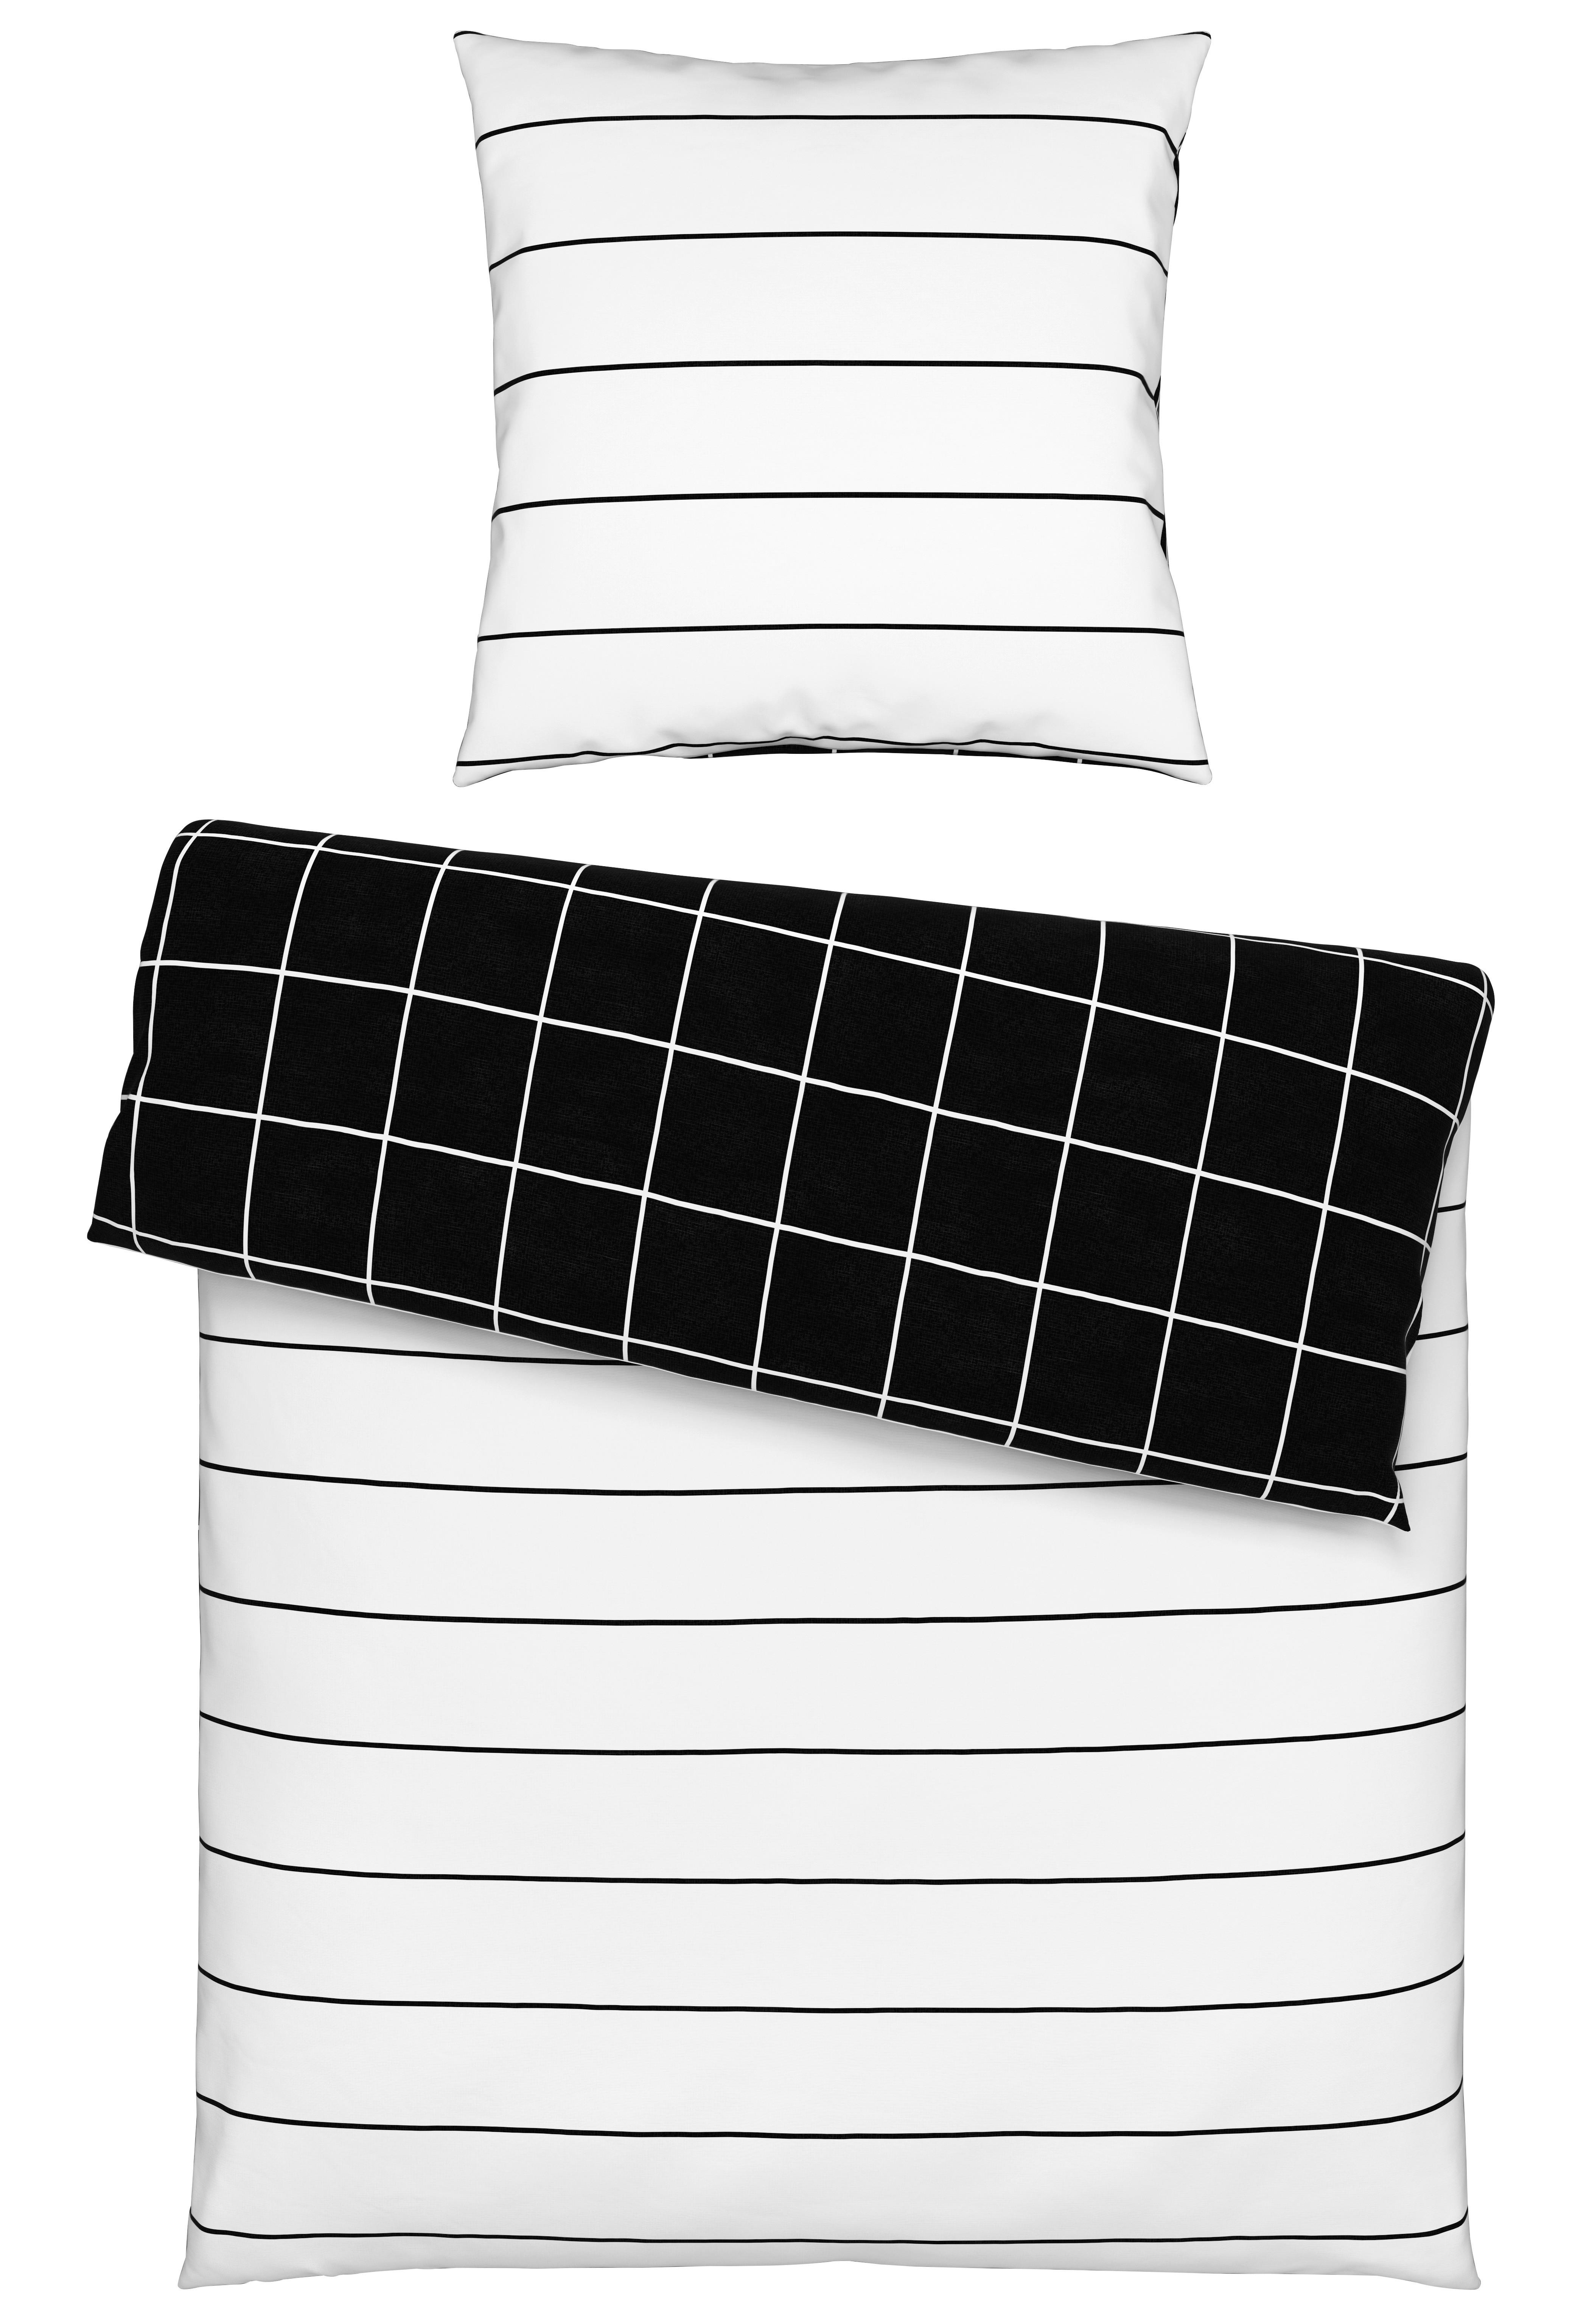 Wendebettwäsche Kira in Weiß/Schwarz ca. 135x200cm - Schwarz/Weiß, MODERN, Textil (135/200cm) - Modern Living